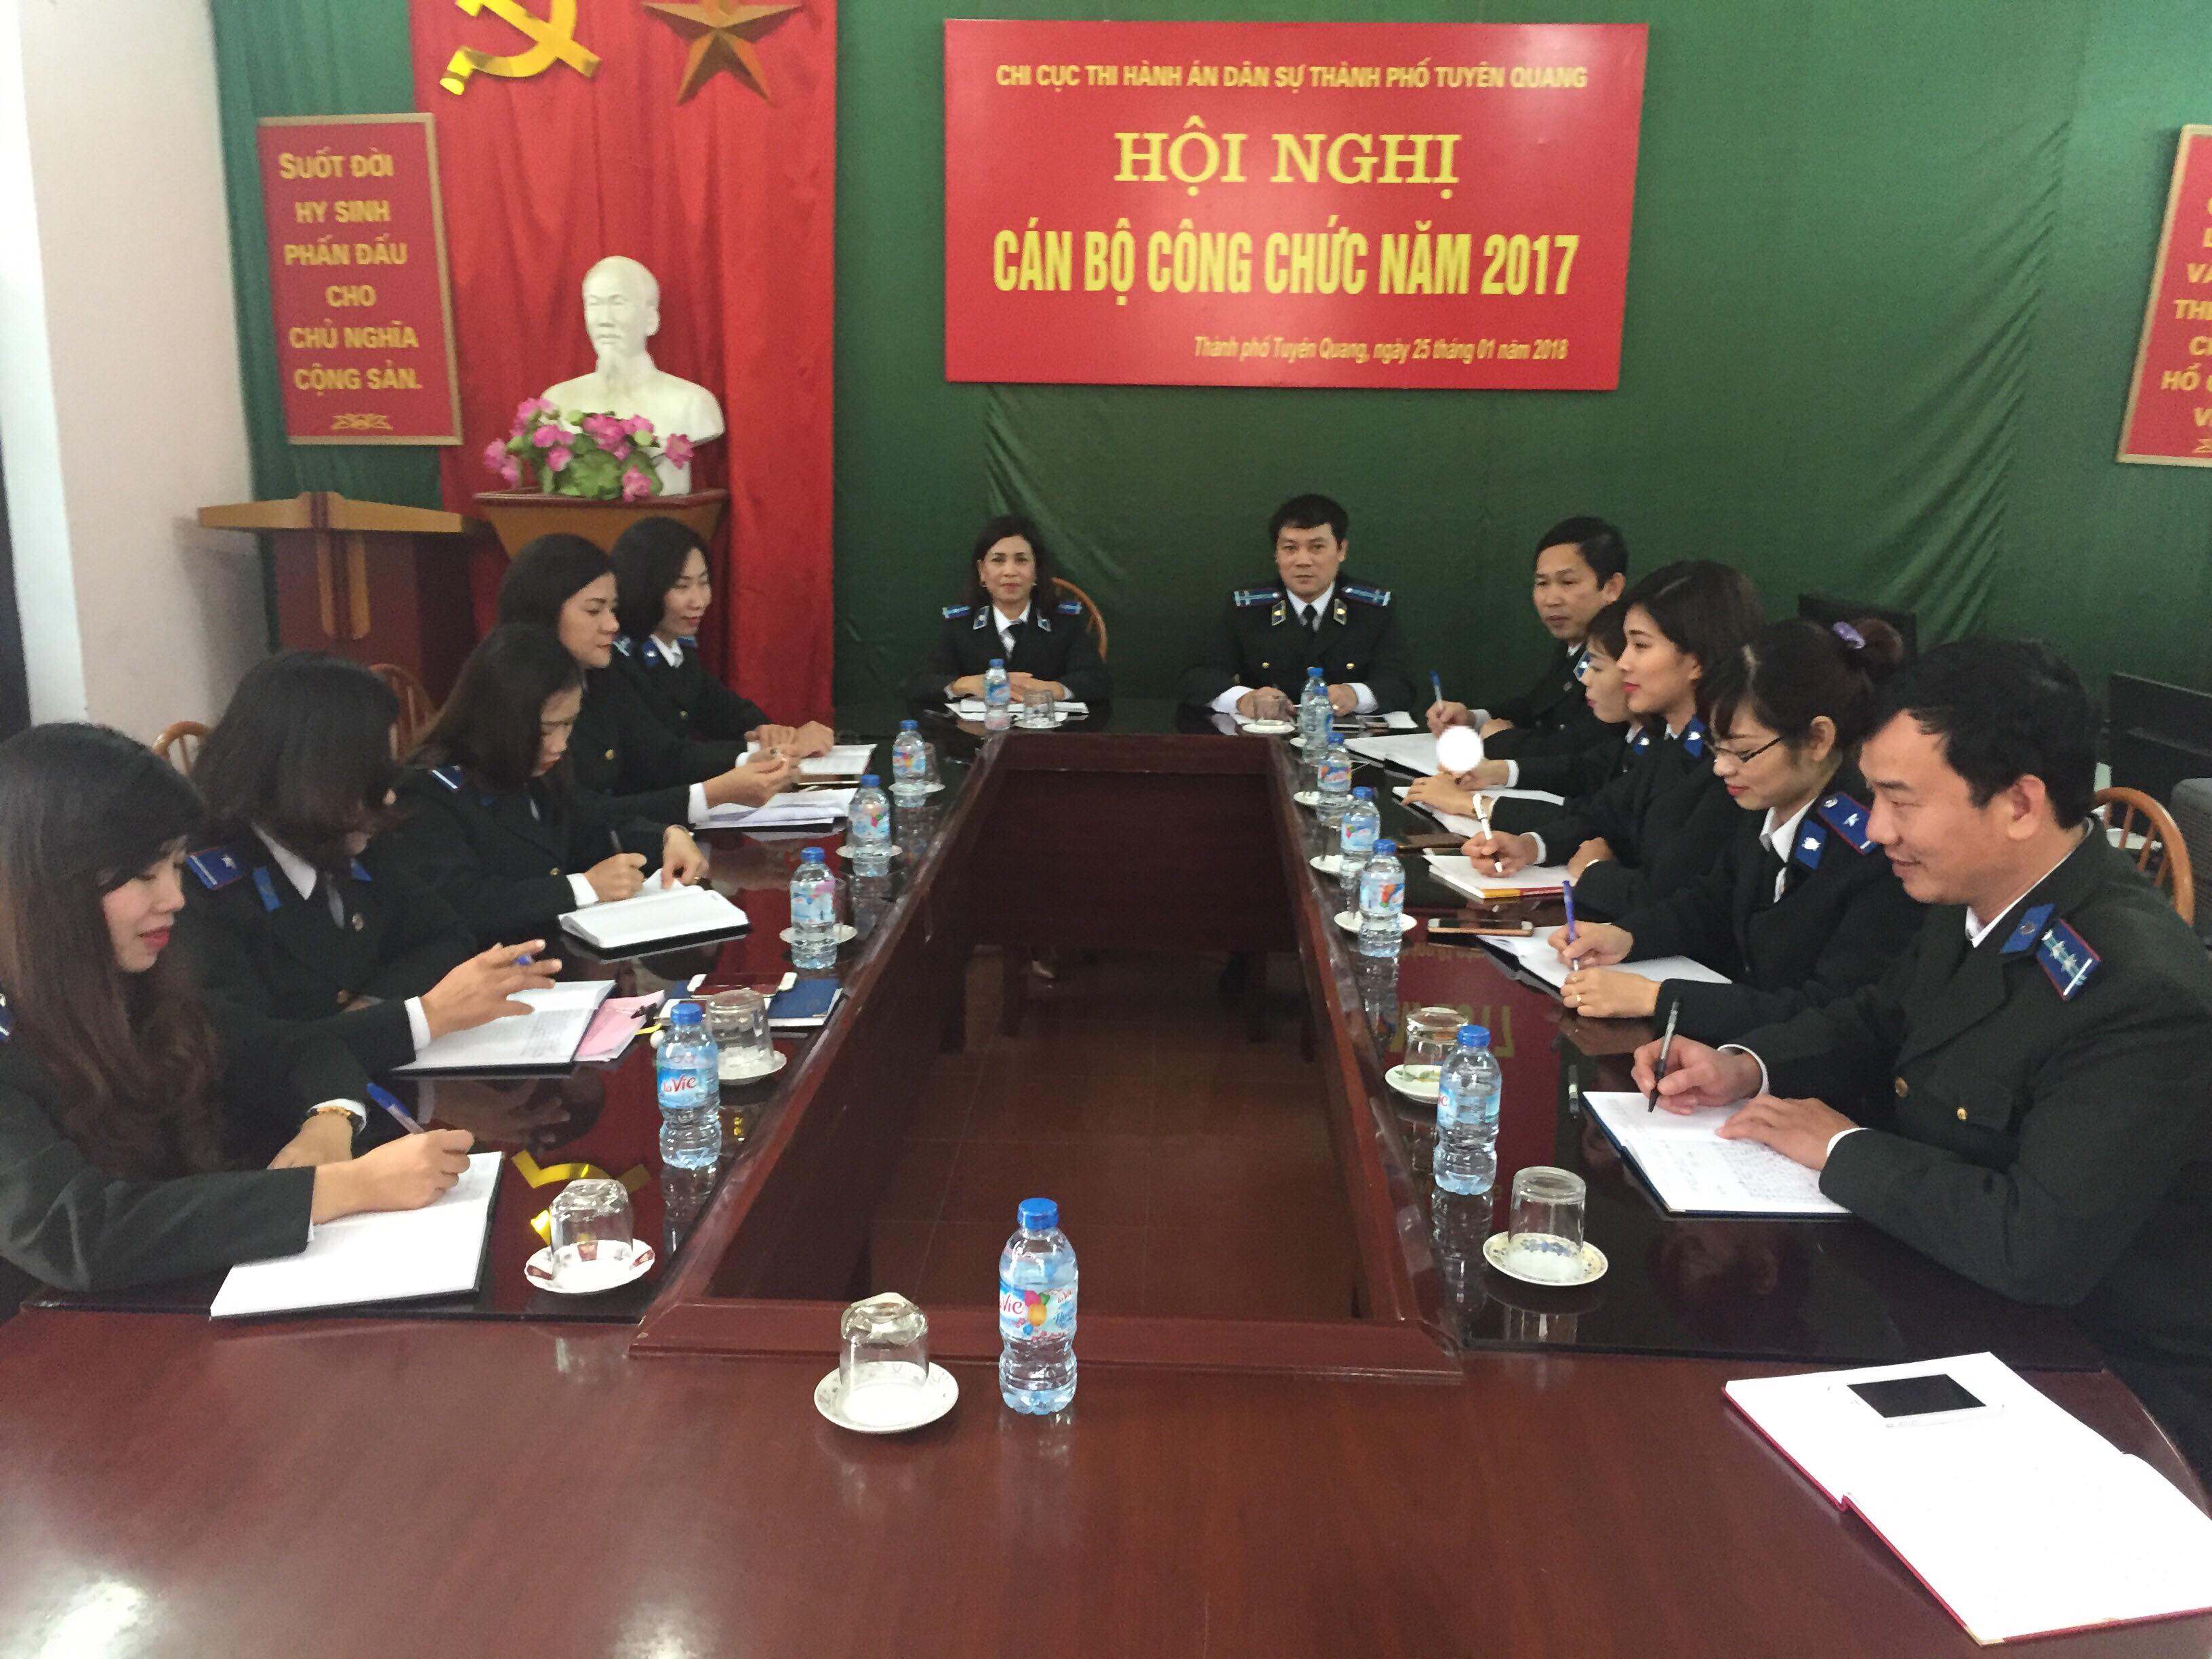 Chi cục Thi hành án dân sự thành phố Tuyên Quang tổ chức Hội nghị cán bộ, công chức năm 2017.